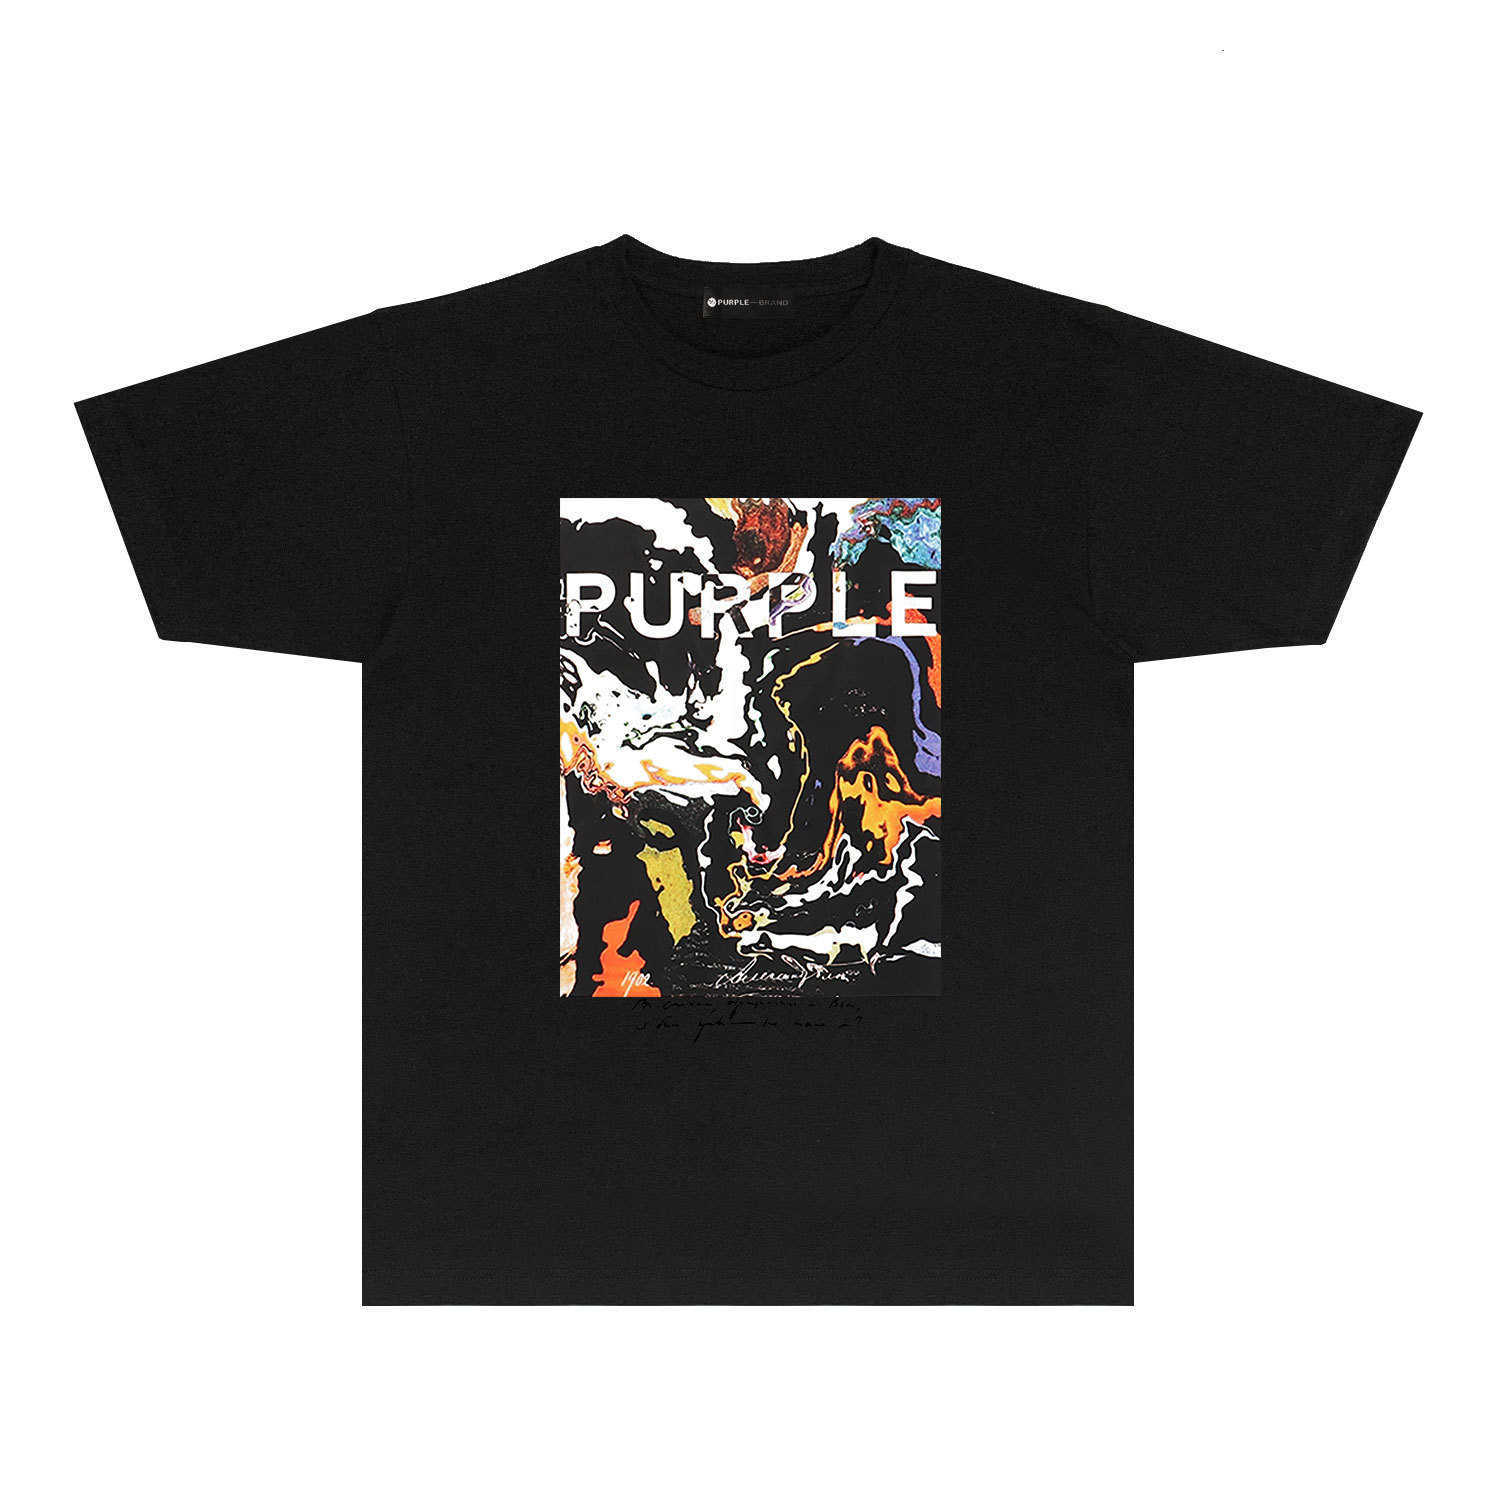 Trendy merk PURPLE BRAND T-SHIRT T-shirt met korte mouwen en korte mouwenNYW6